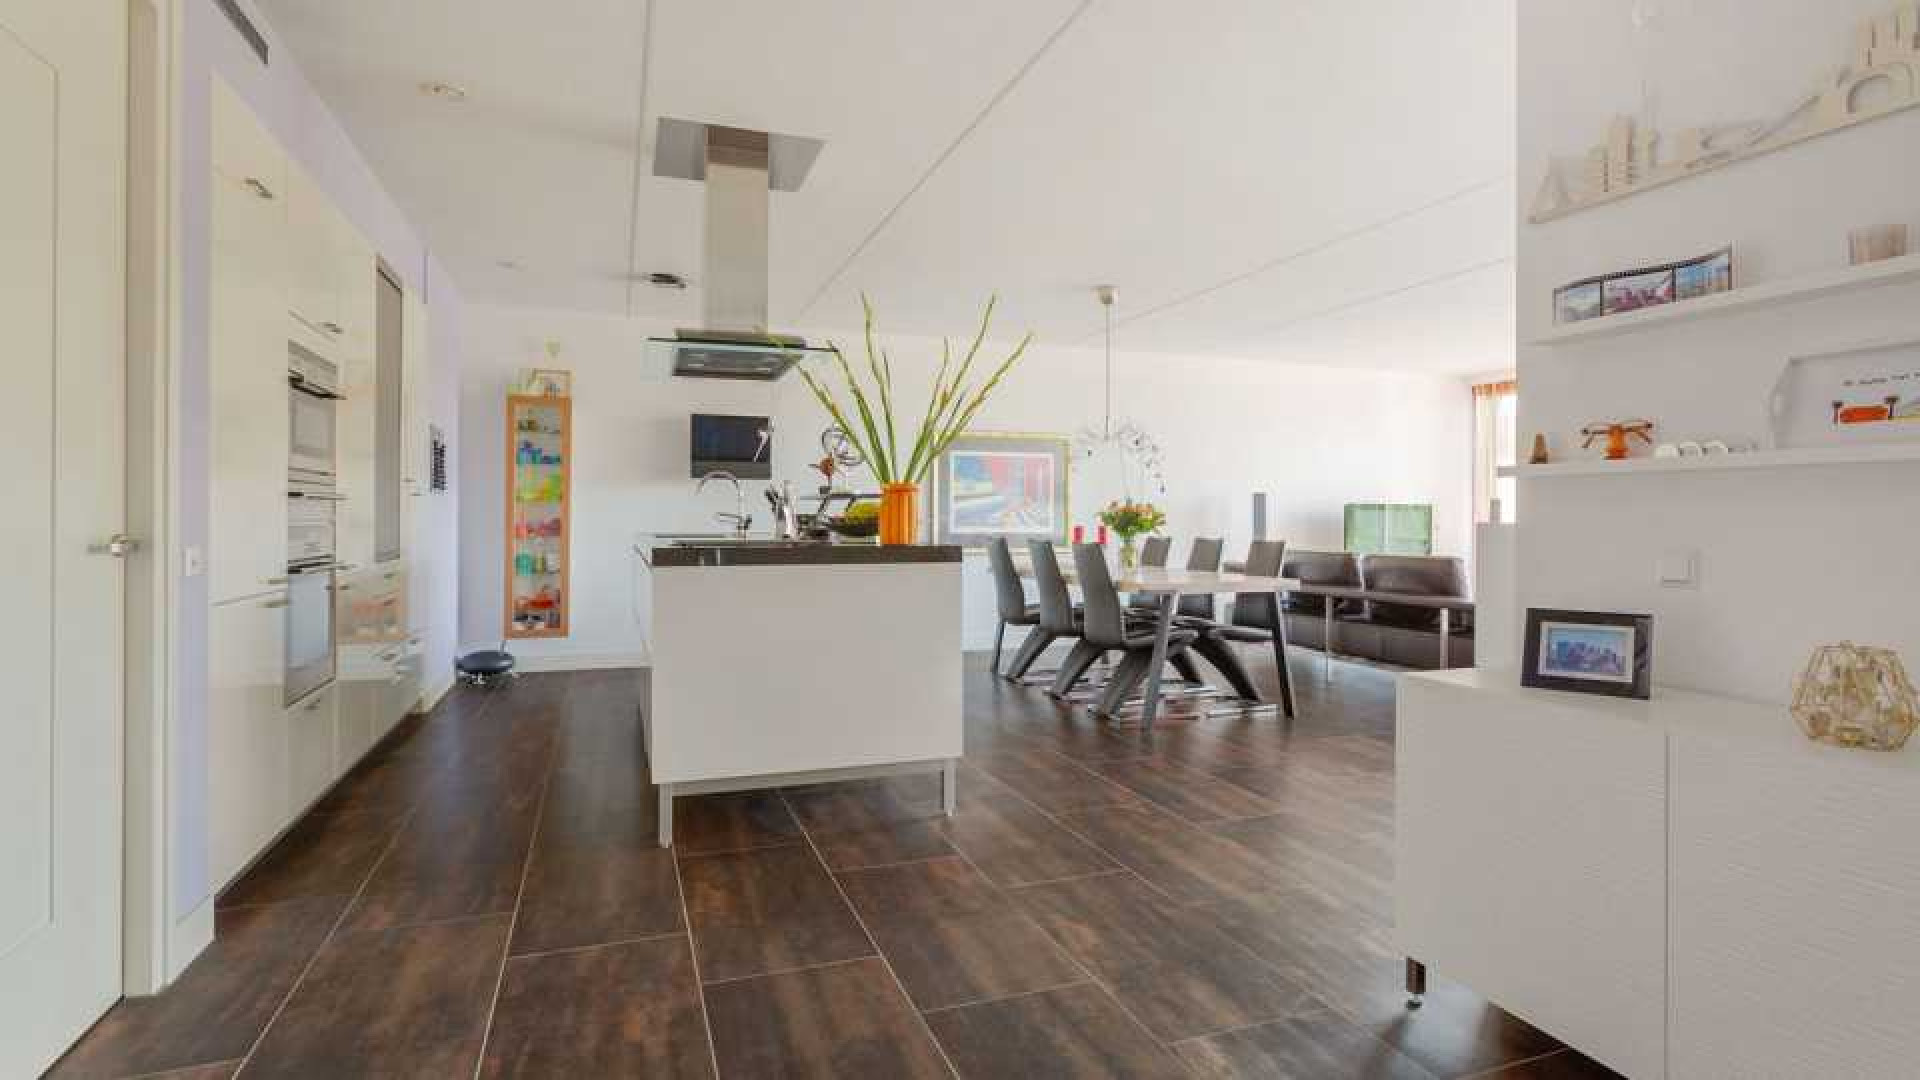 Dre Hazes koopt dit zeer luxe appartement in Rotterdam. Zie foto's